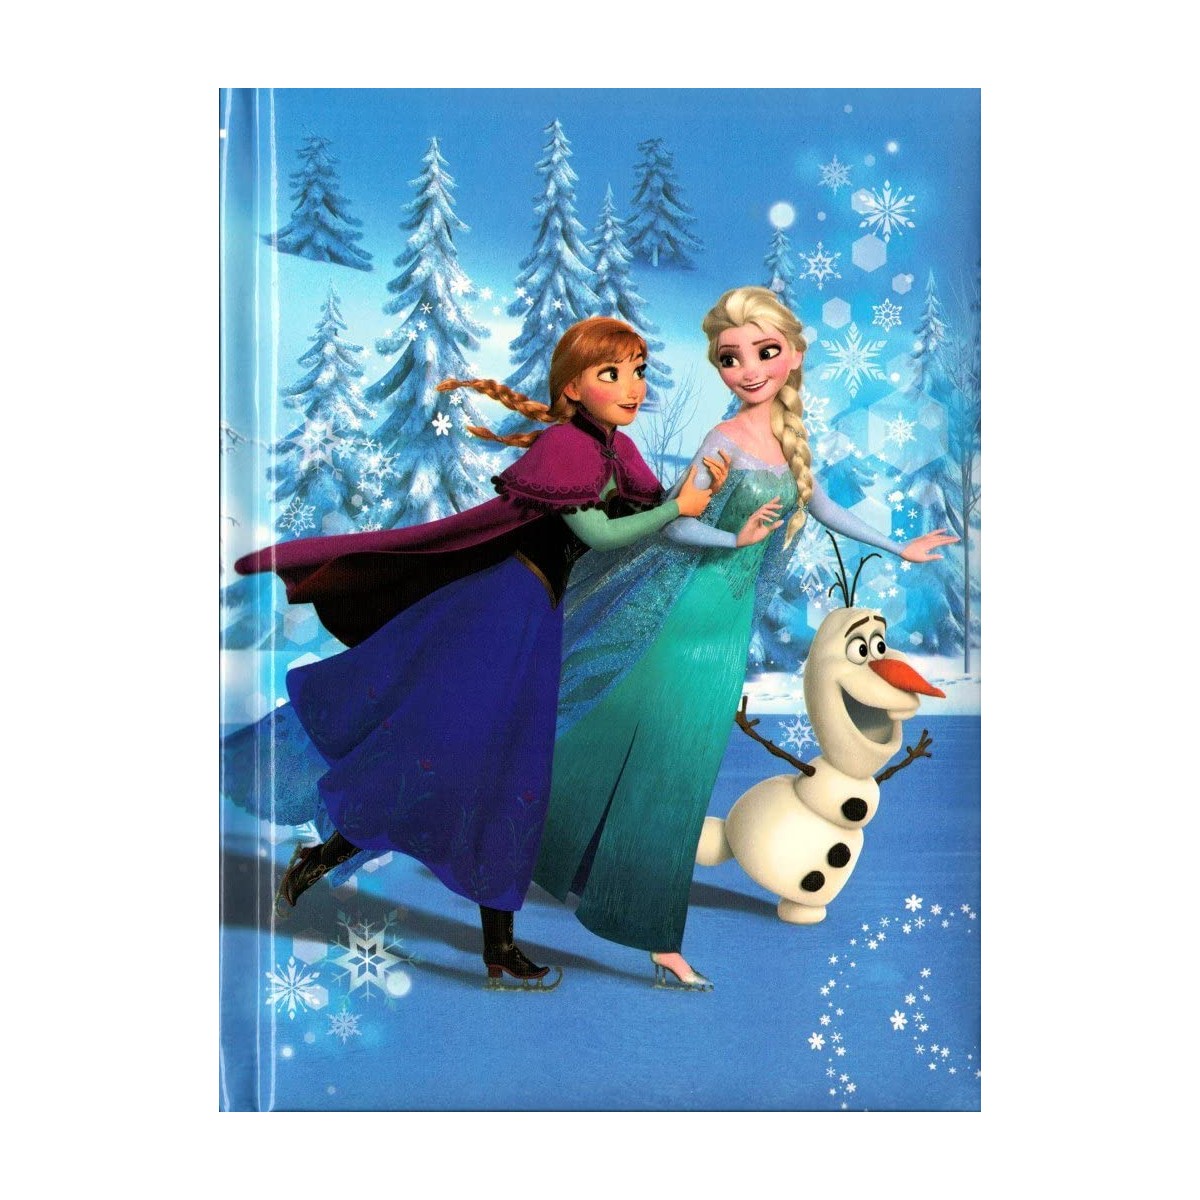 Agenda Scuola Frozen con Anna Elsa - Disney